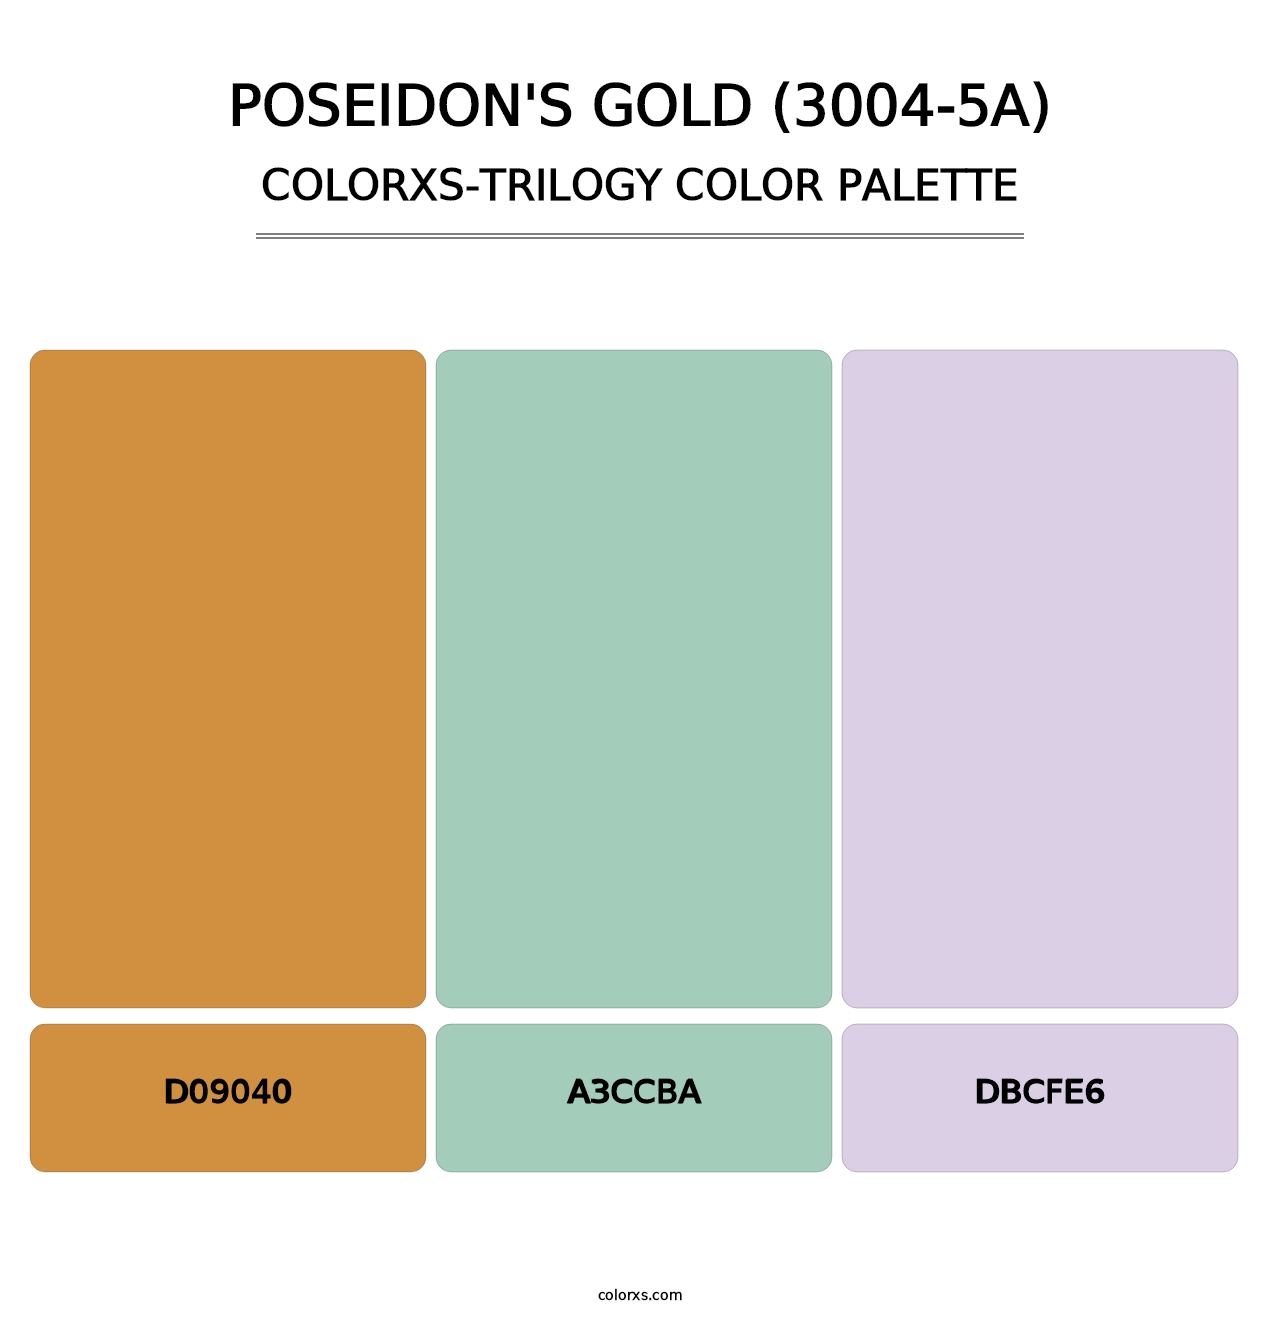 Poseidon's Gold (3004-5A) - Colorxs Trilogy Palette